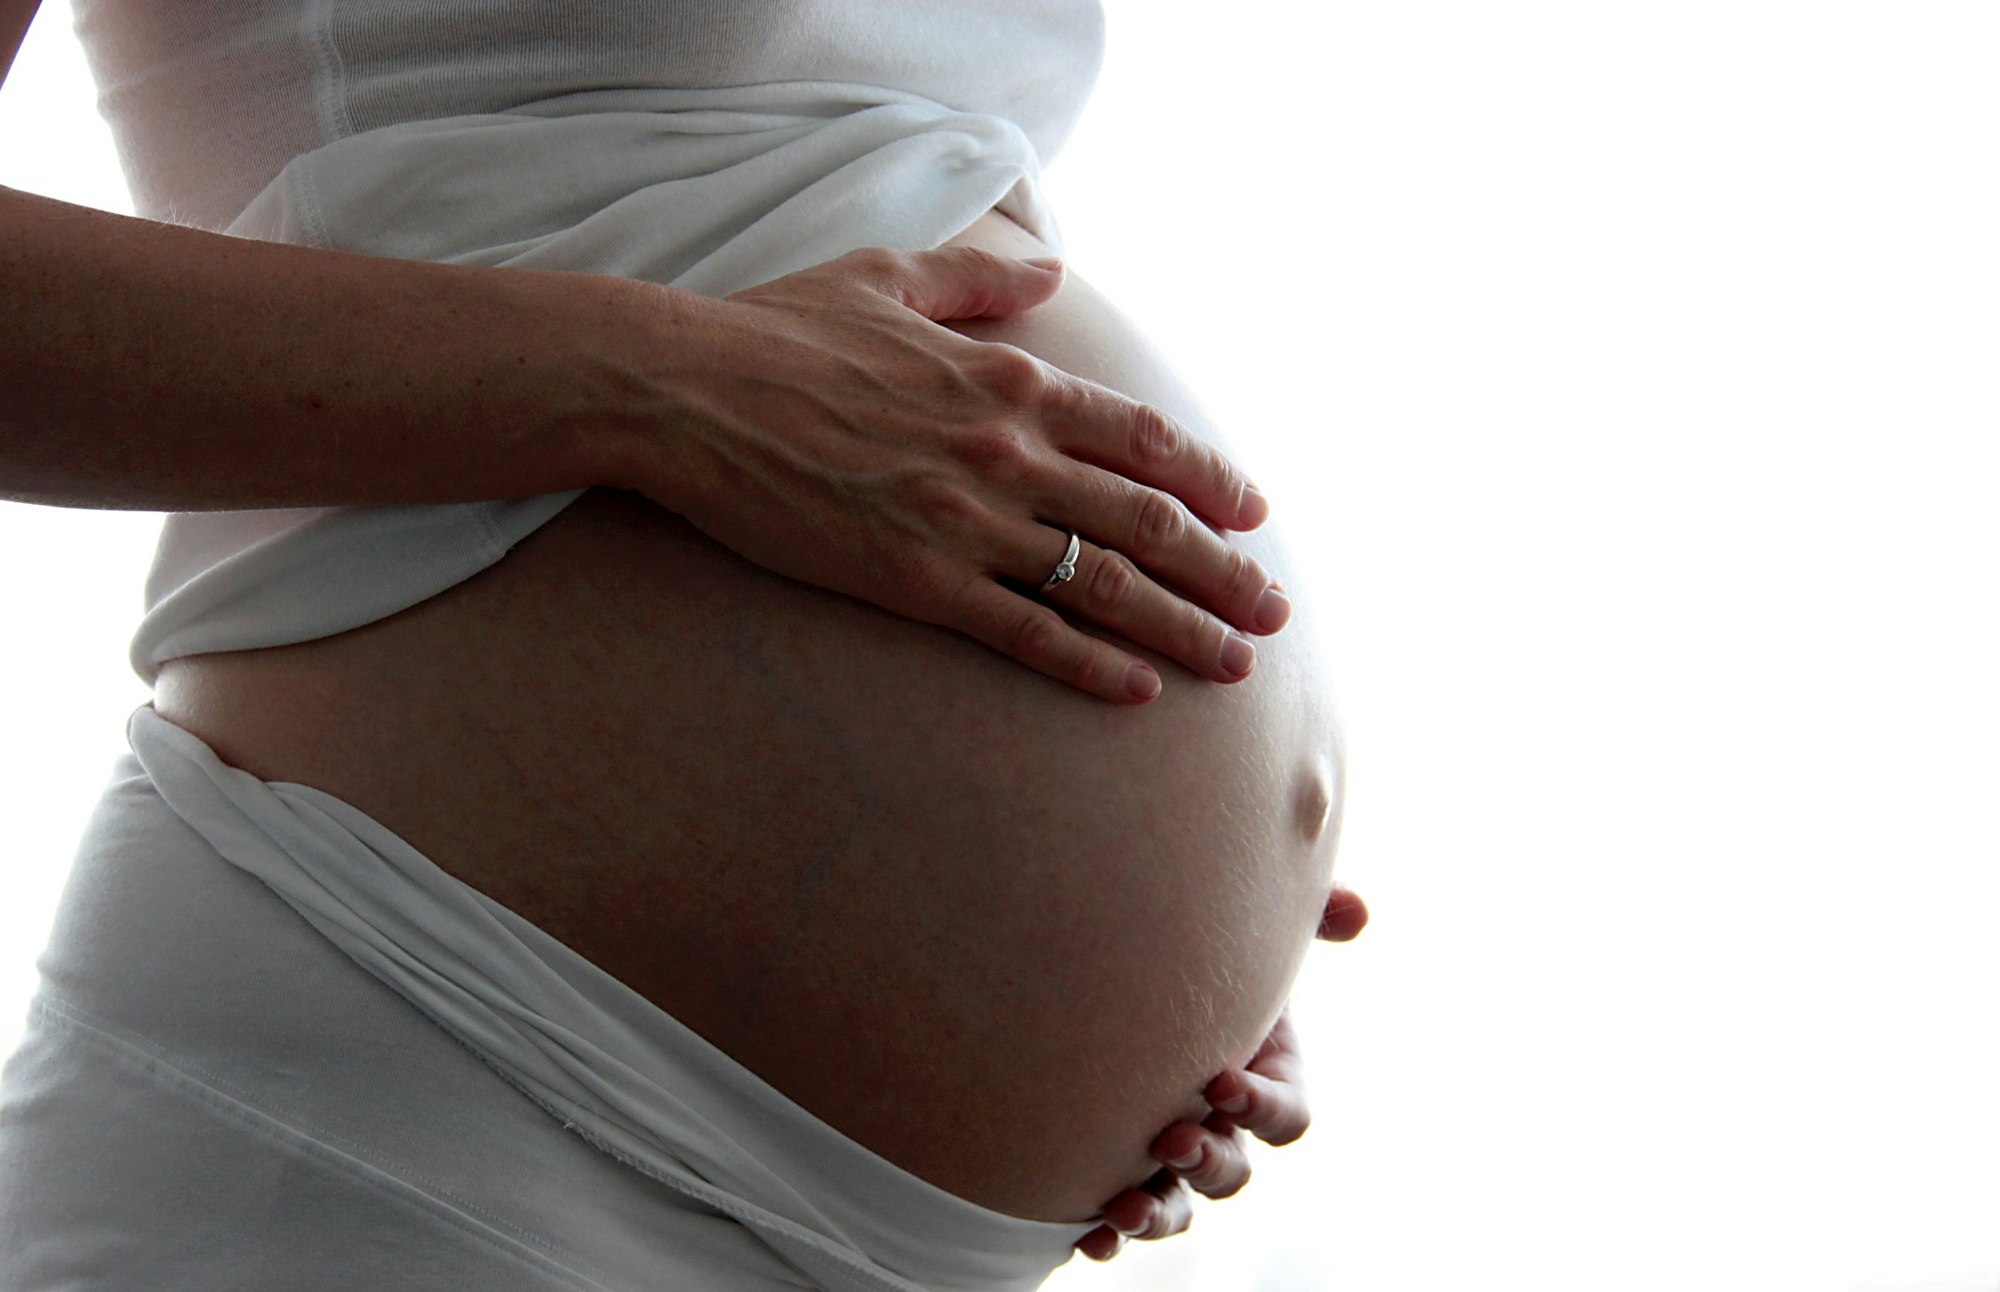 Leihmütter sind mit dem Kind, das sie austragen, nicht verwandt. Ihnen werden ein oder mehrere Embryonen eingesetzt, die bei einer künstlichen Befruchtung gezeugt wurden.